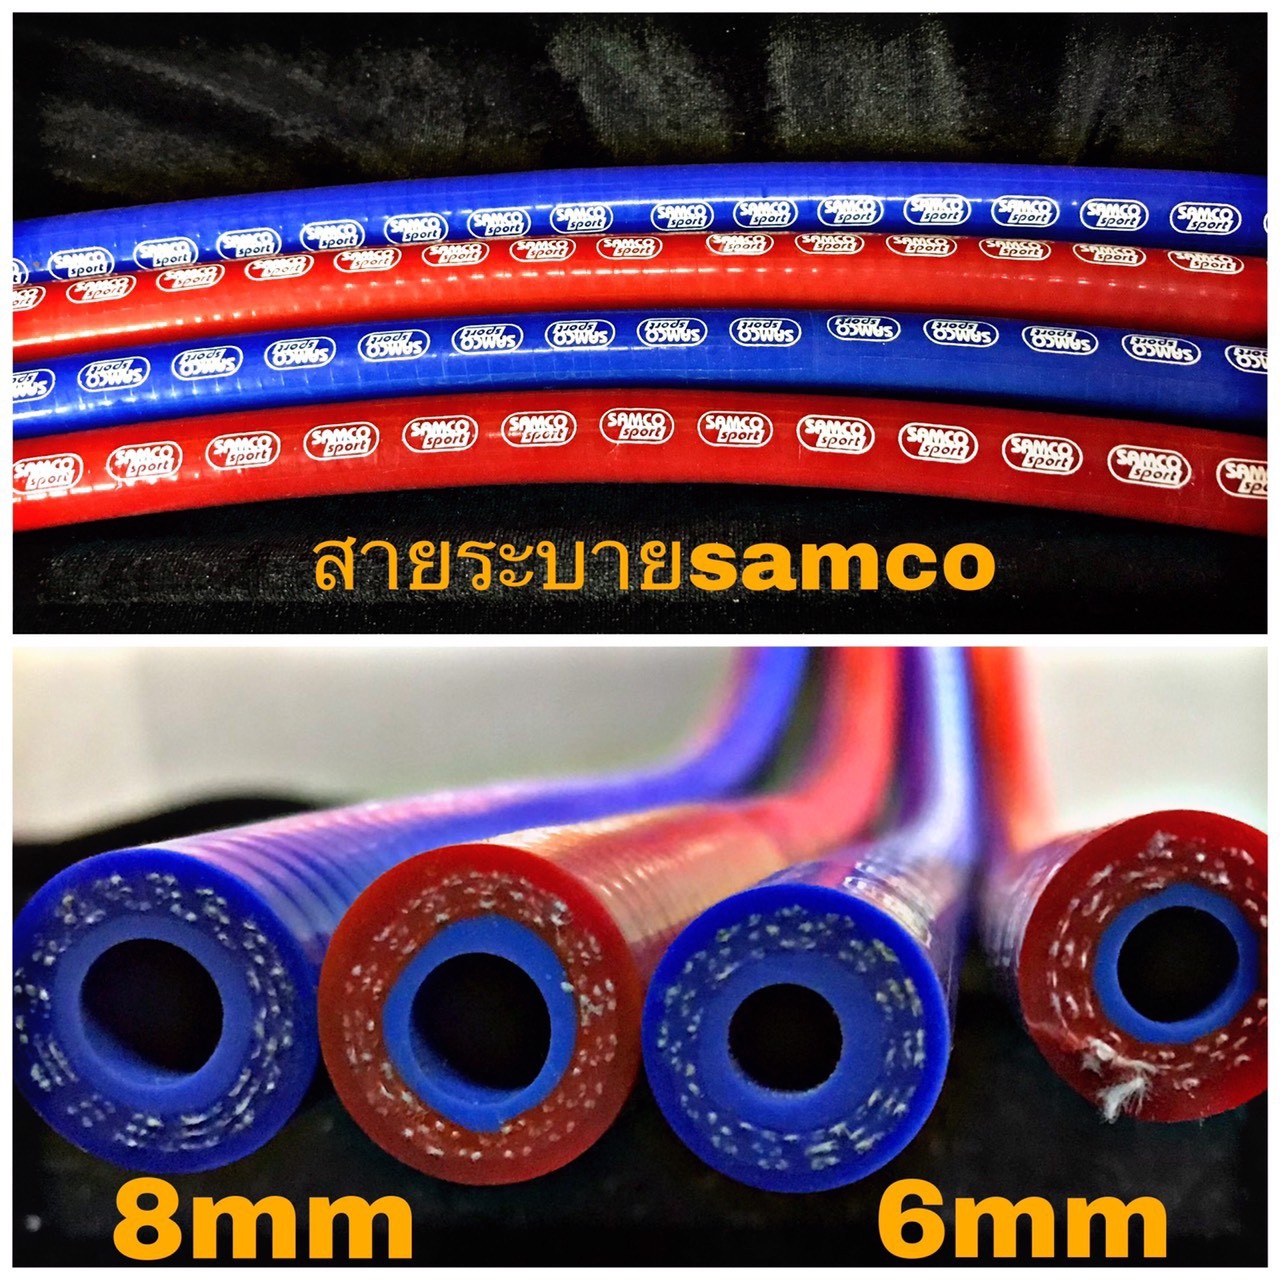 สายระบาย SAMCO 16 mm หนาคุณภาพเยี่ยม (เลือกสีในแชทนะครับ)